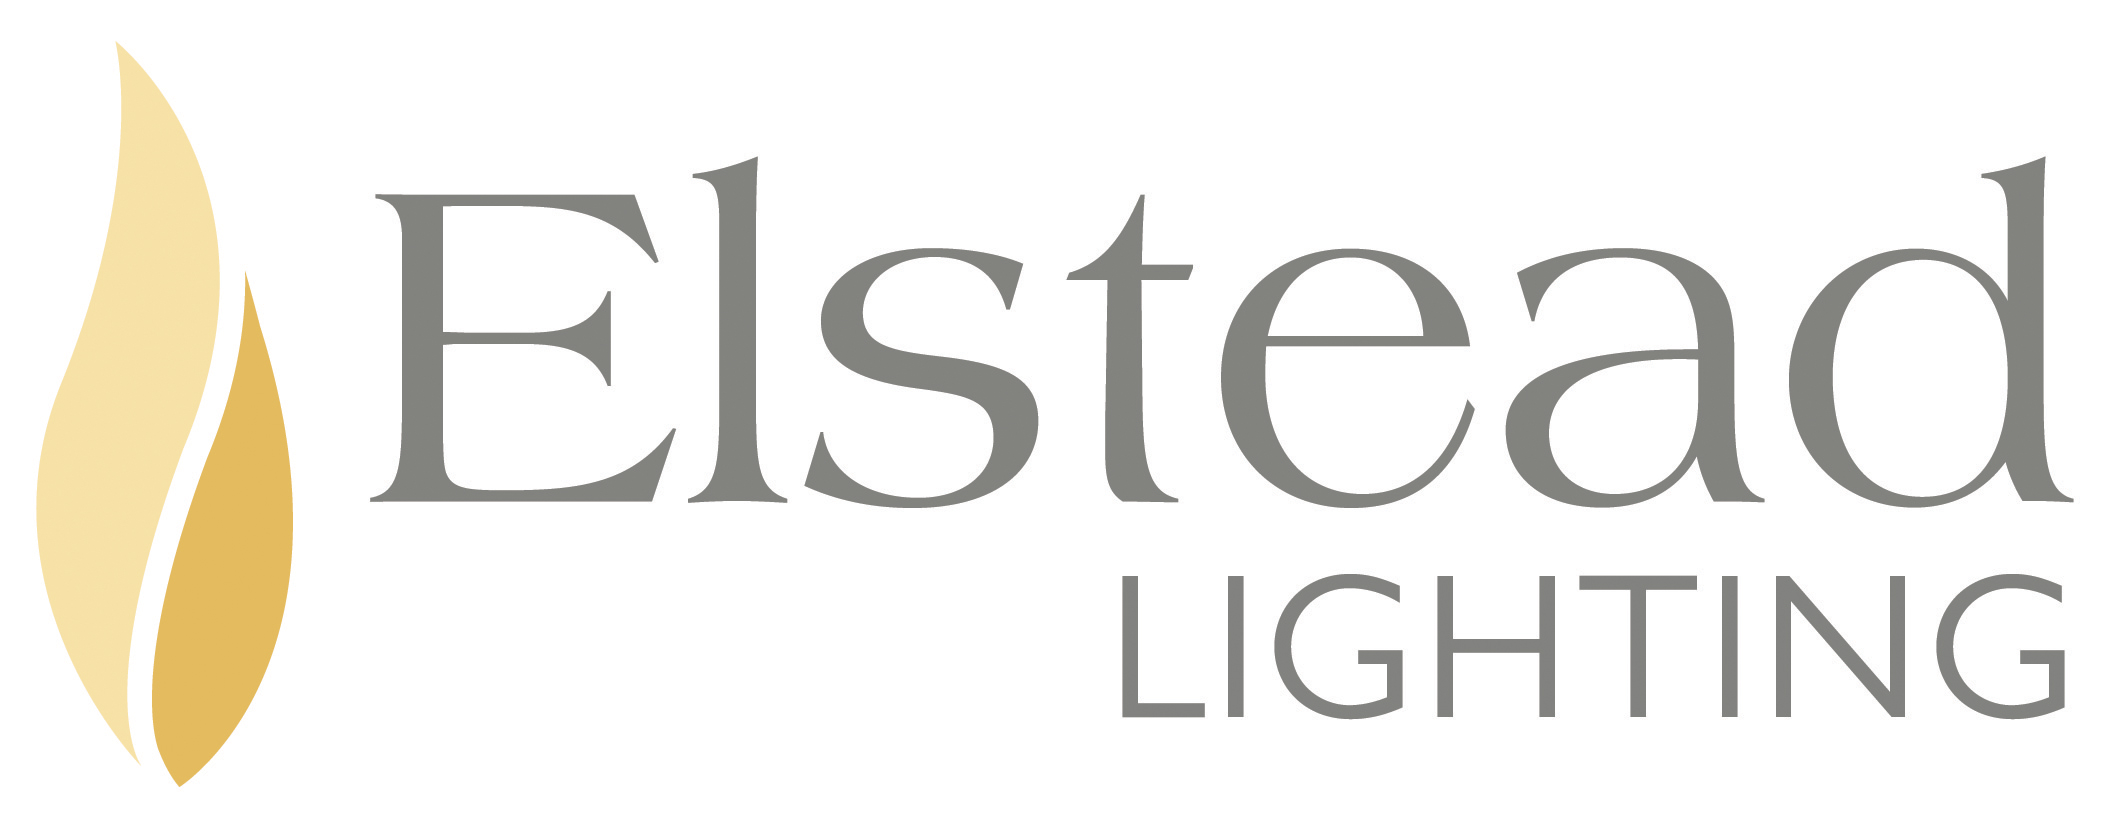 Elstead_Lighting_Logo.jpg